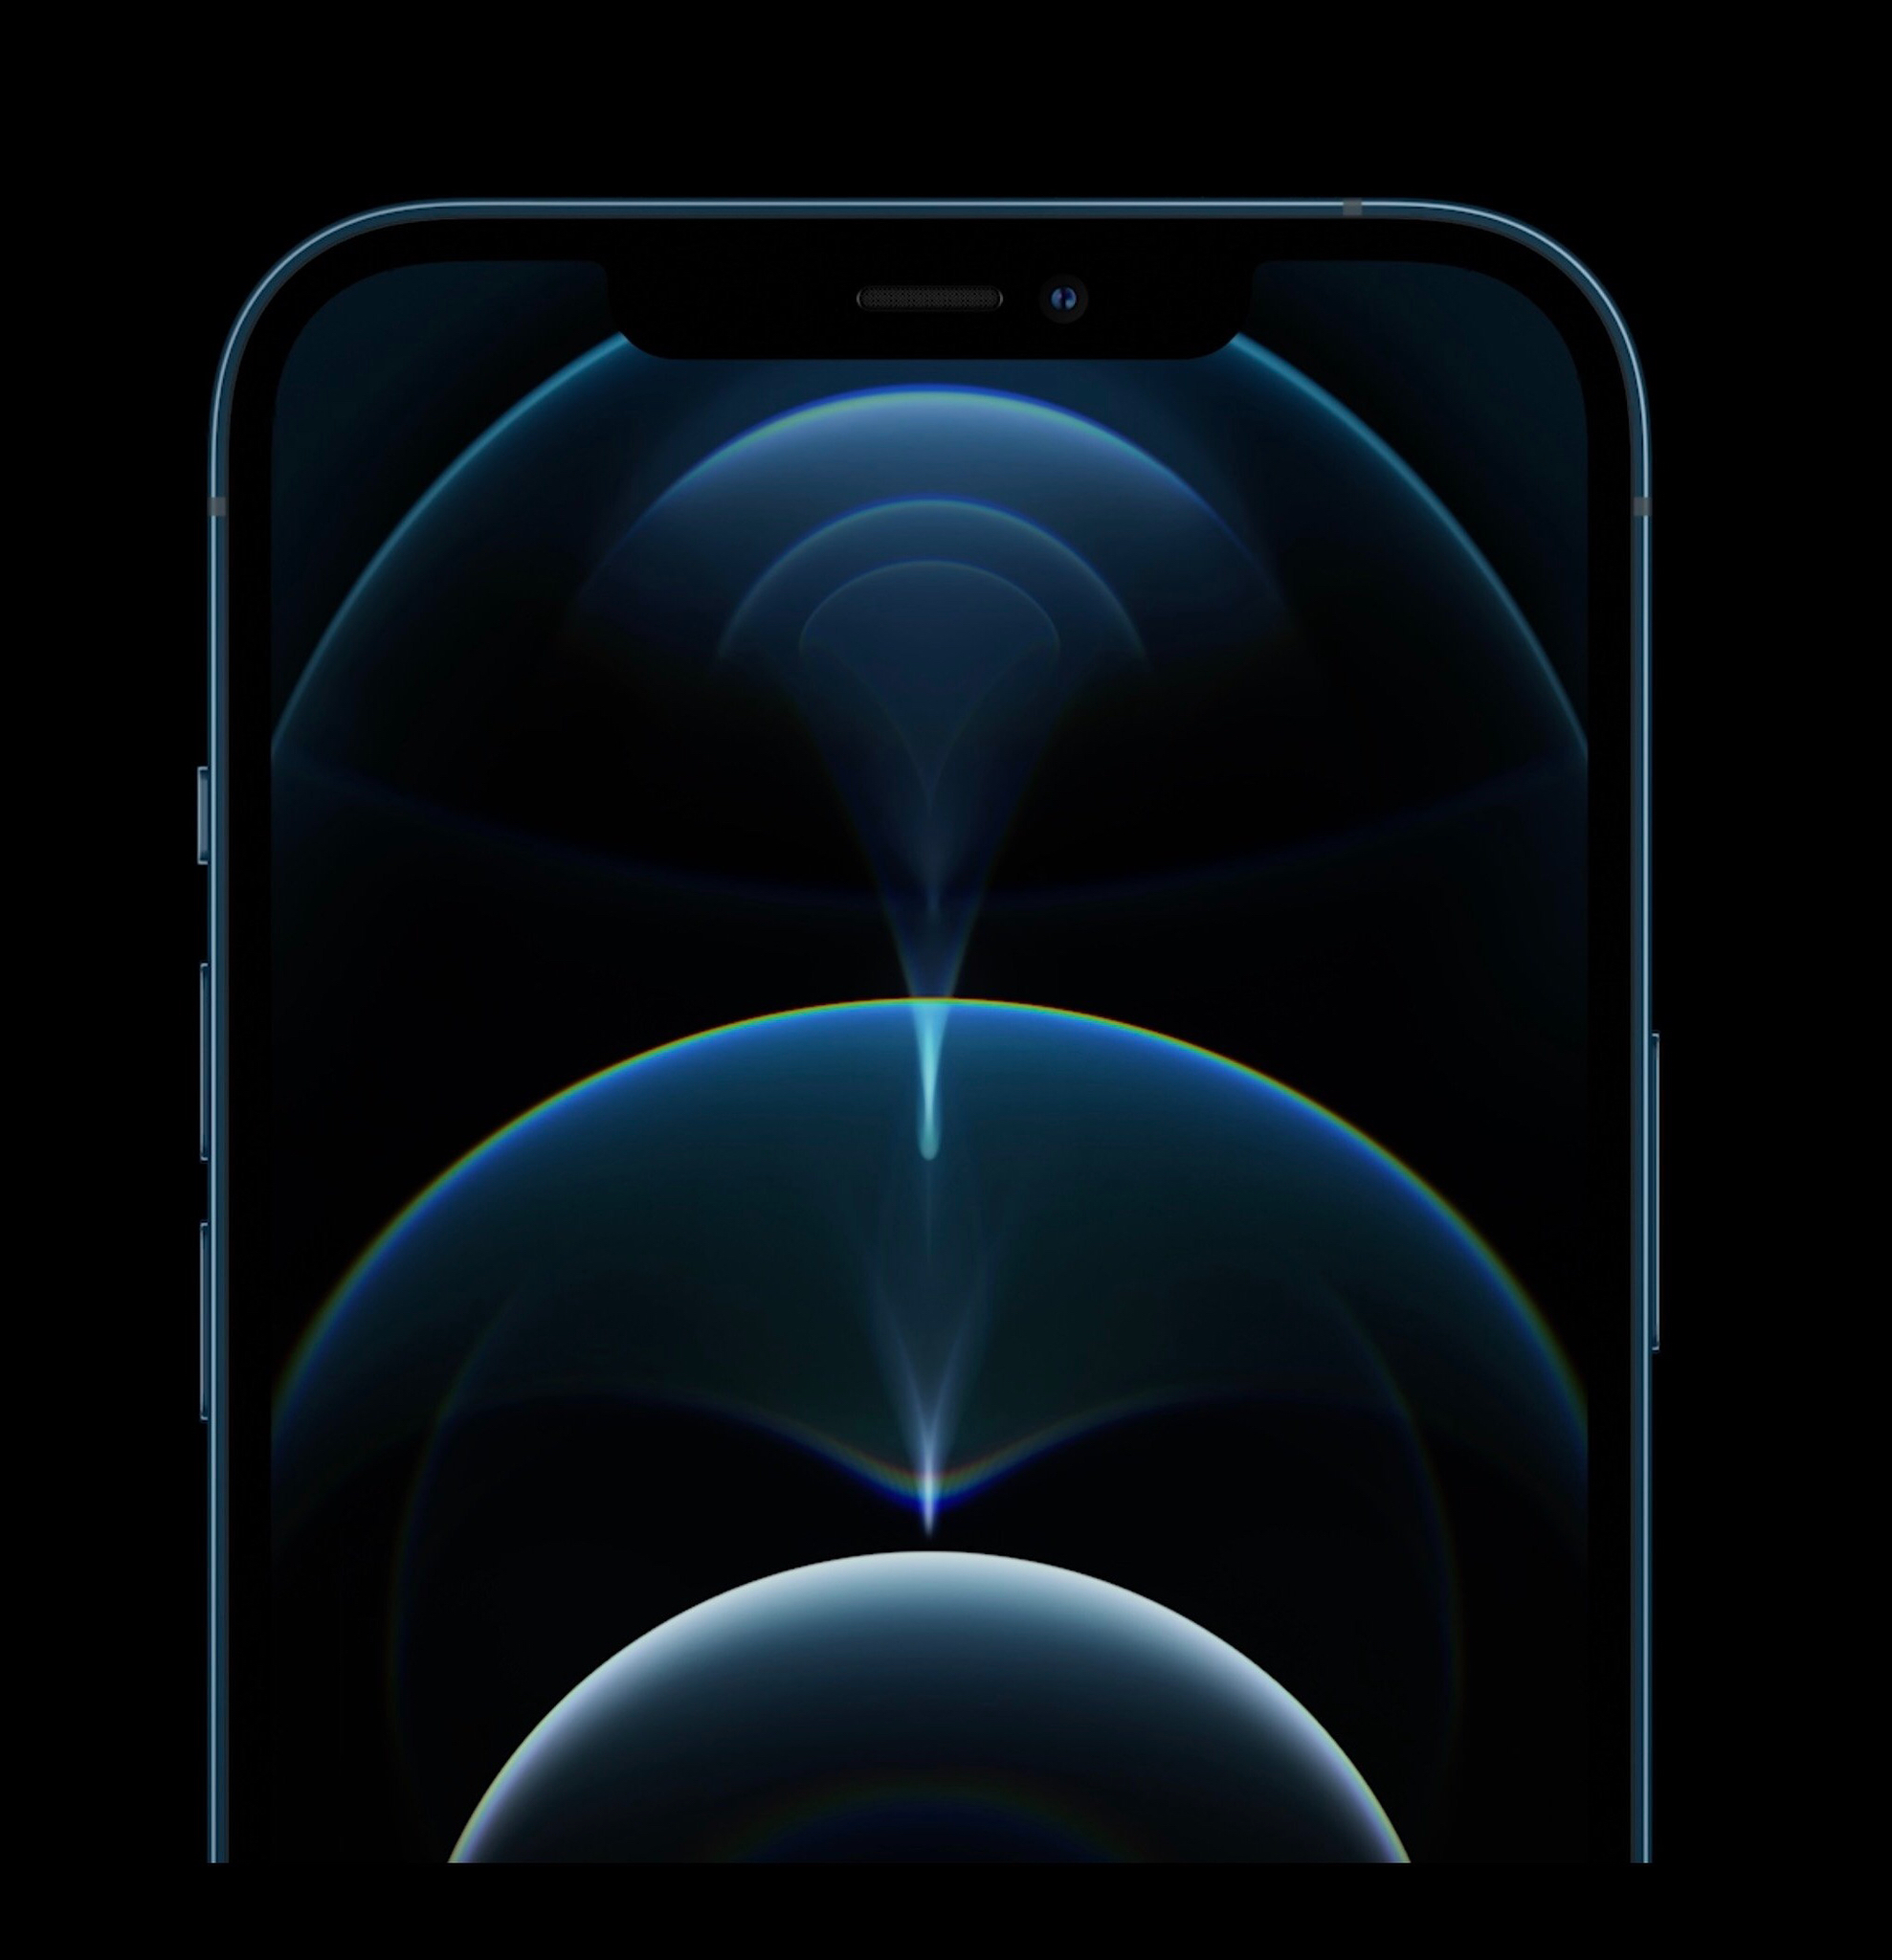 Tải hình nền tím thơ mộng mới của iPhone 12, có đủ chế độ sáng tối